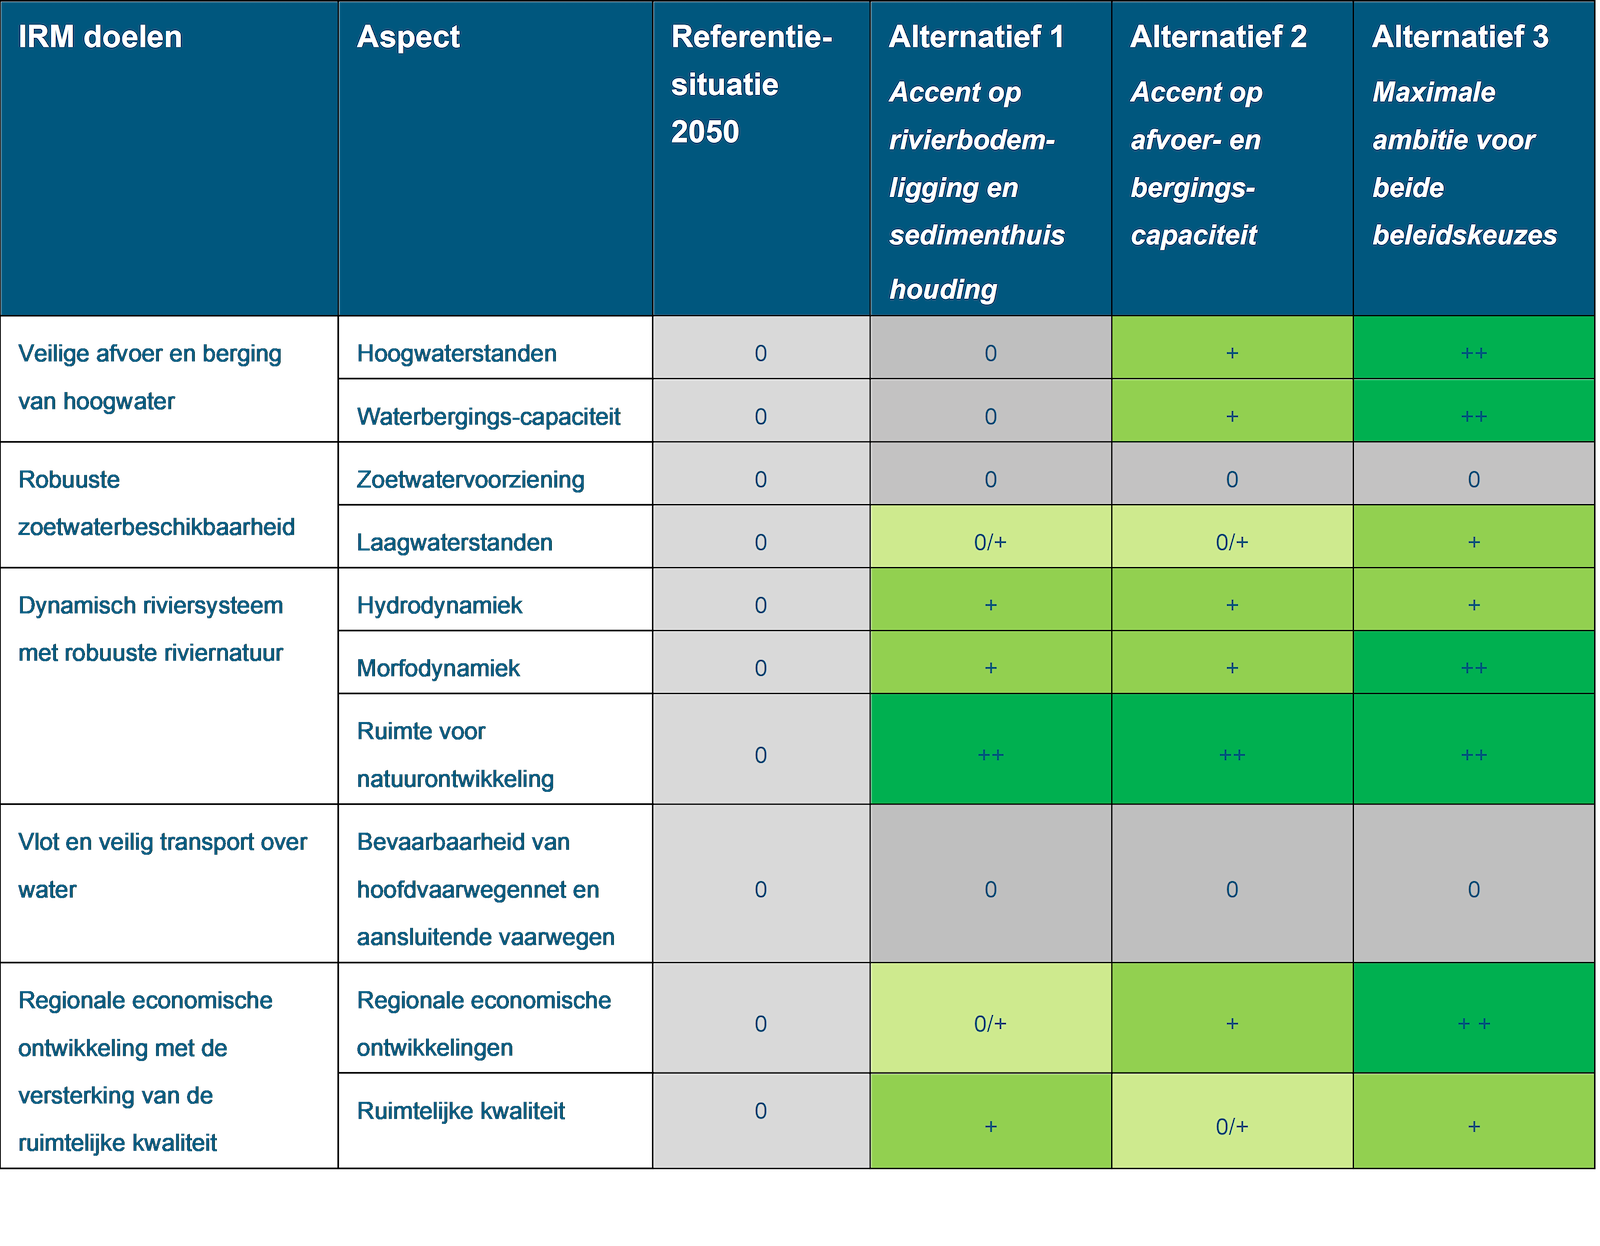 Deze tabel laat de totaalbeoordeling voor het doelbereik van de beoordelingsaspecten zien voor de Maas, inclusief PAGW, voor de referentiesituatie en de drie alternatieven. De beoordeling is toegelicht onder de tabel.